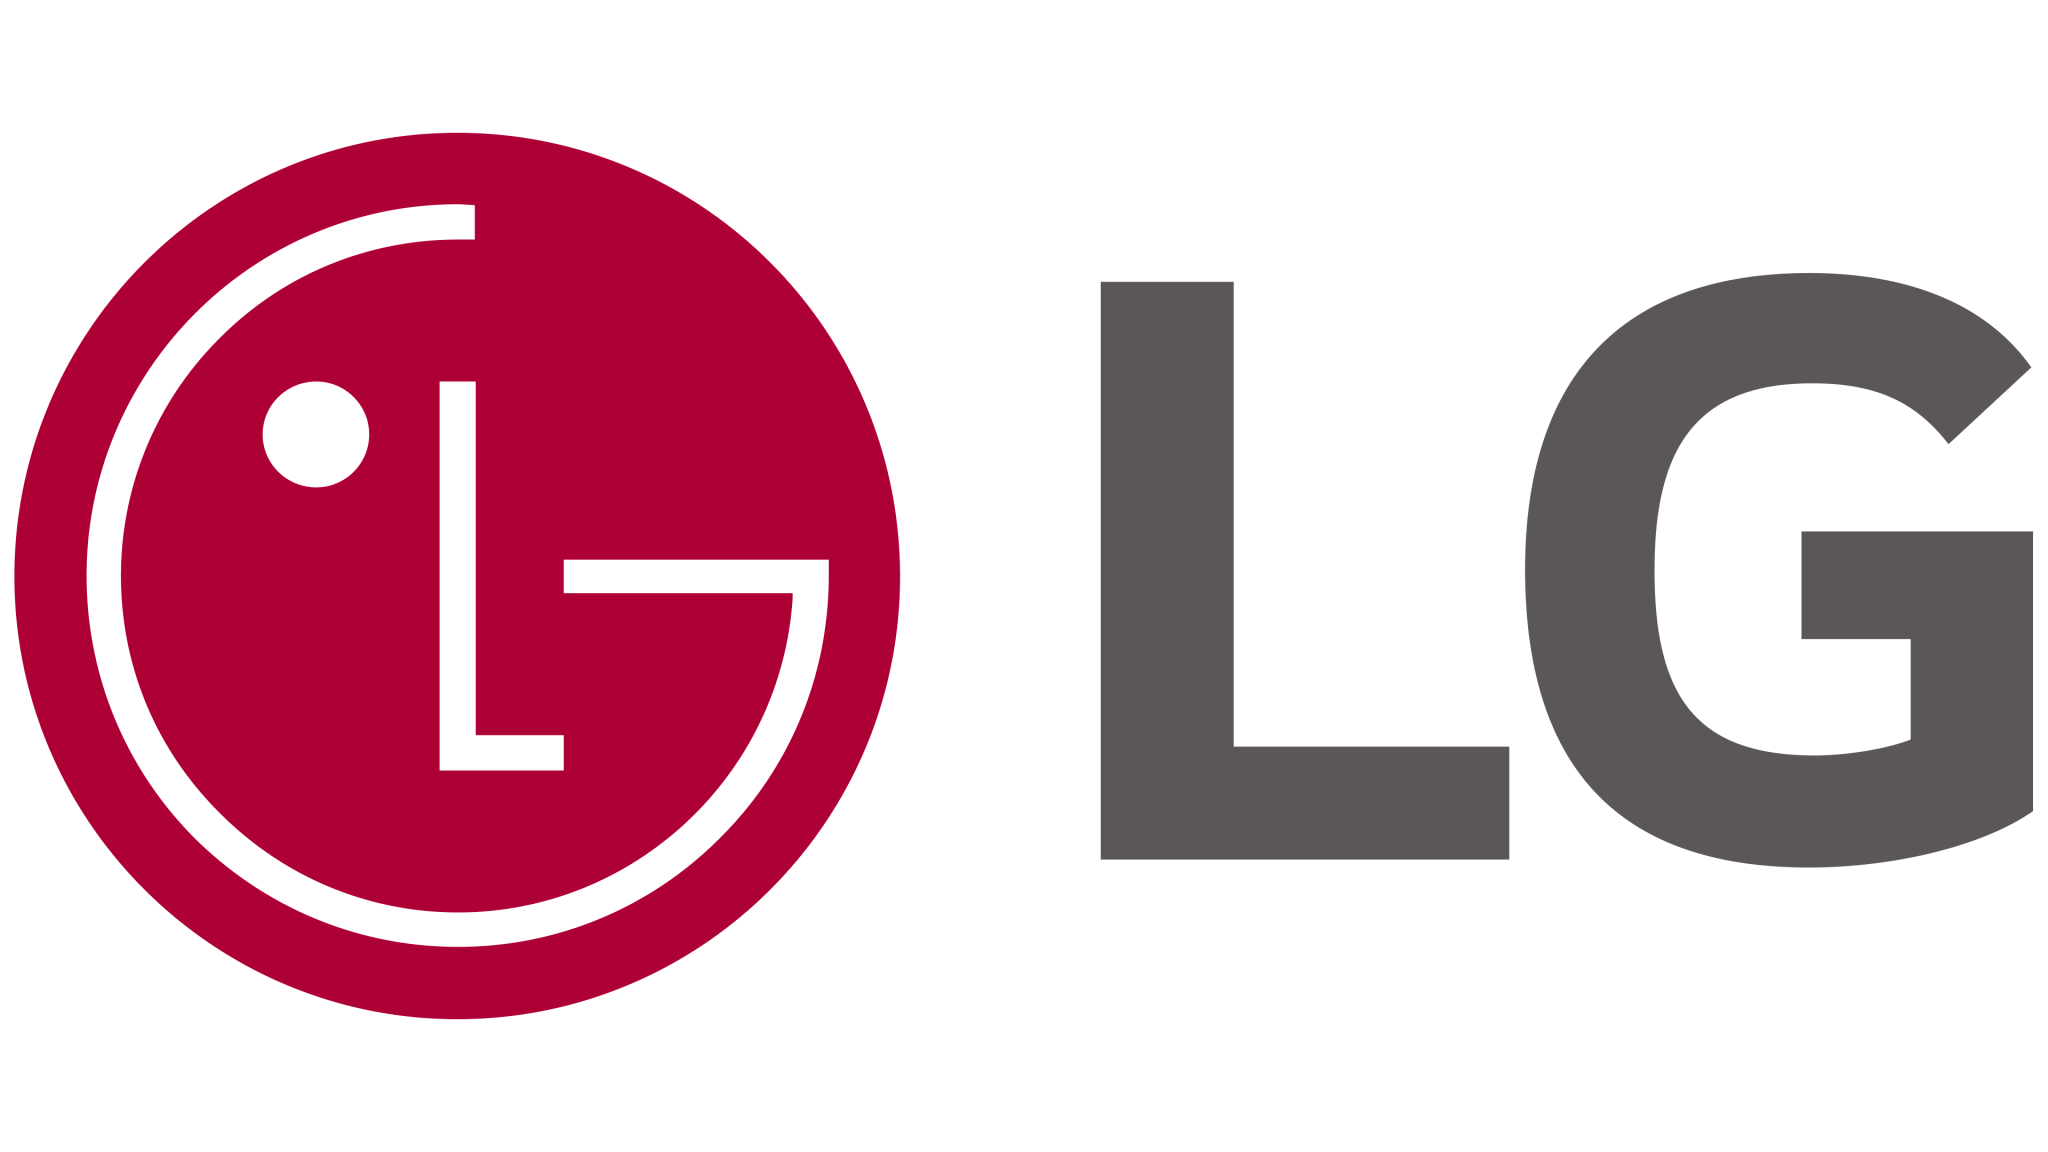 LG | Drone Authority